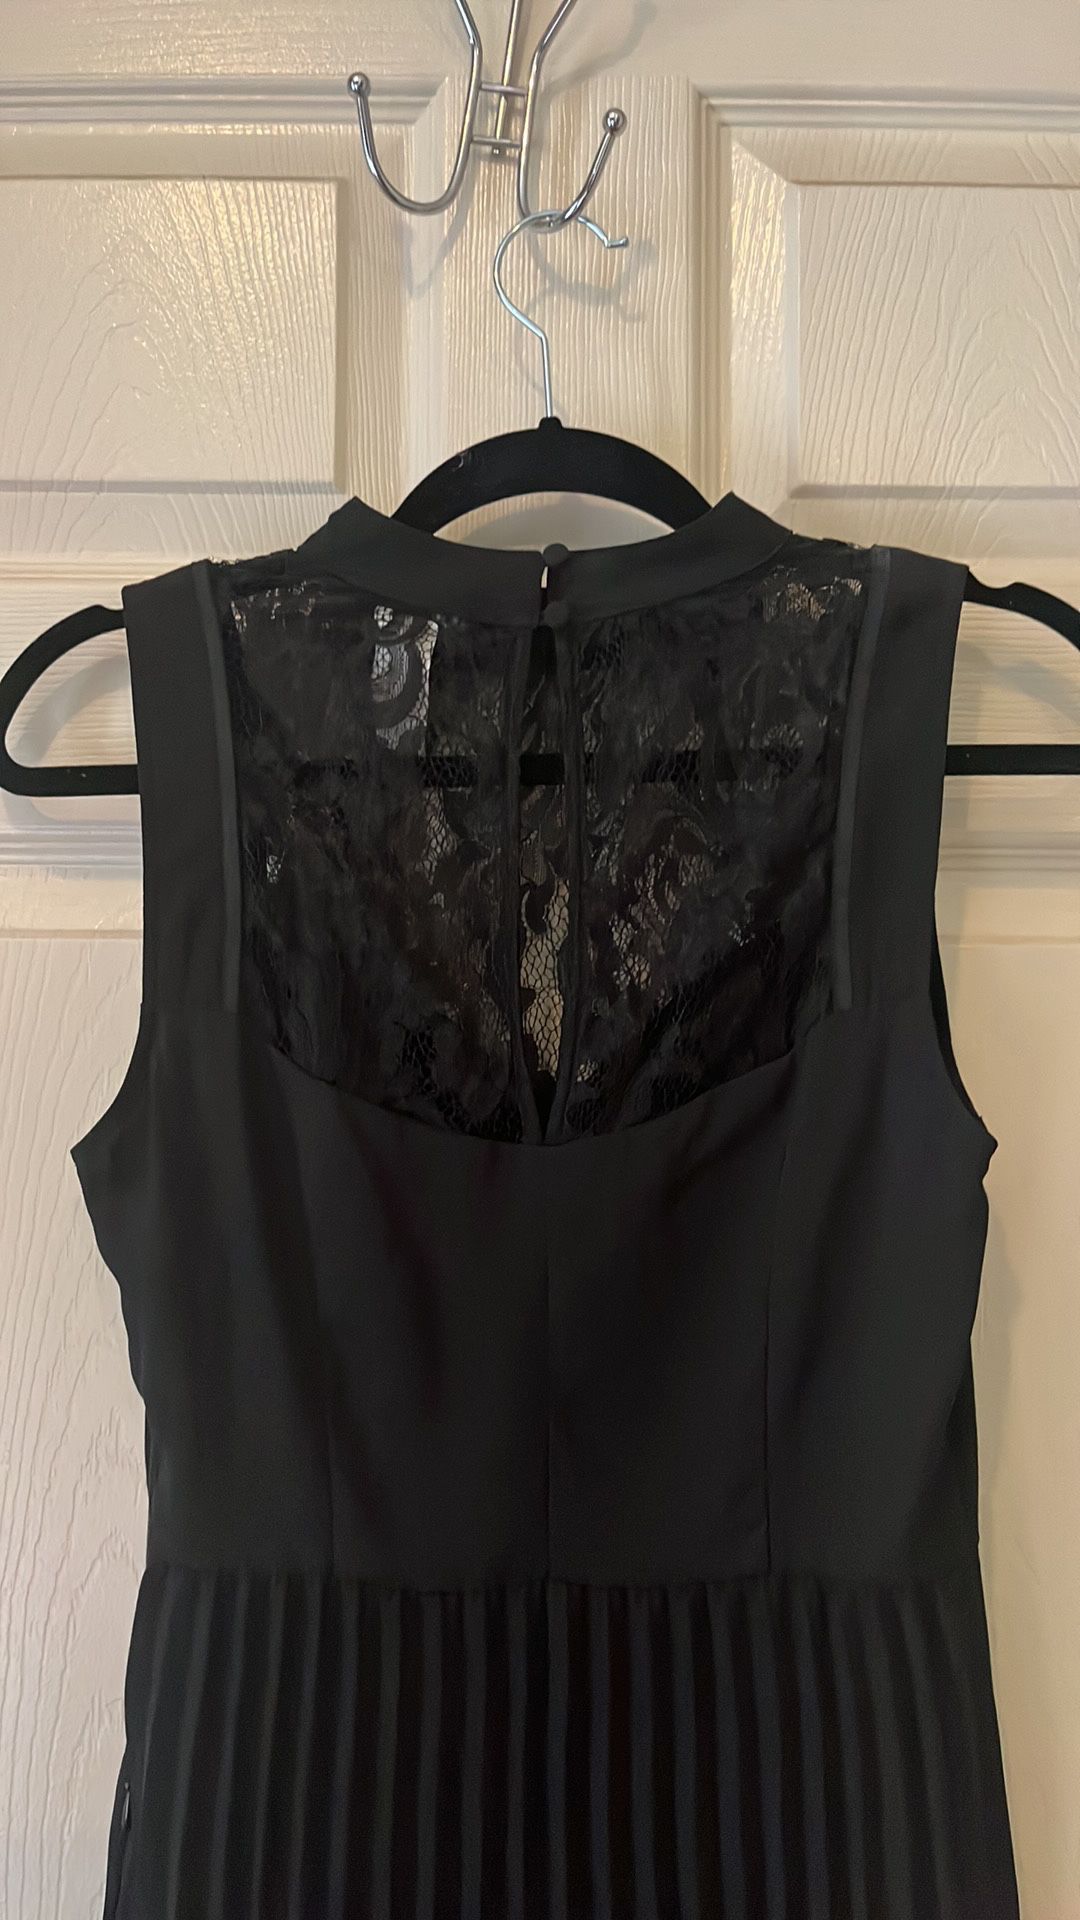 Black Dress W Lace Details 